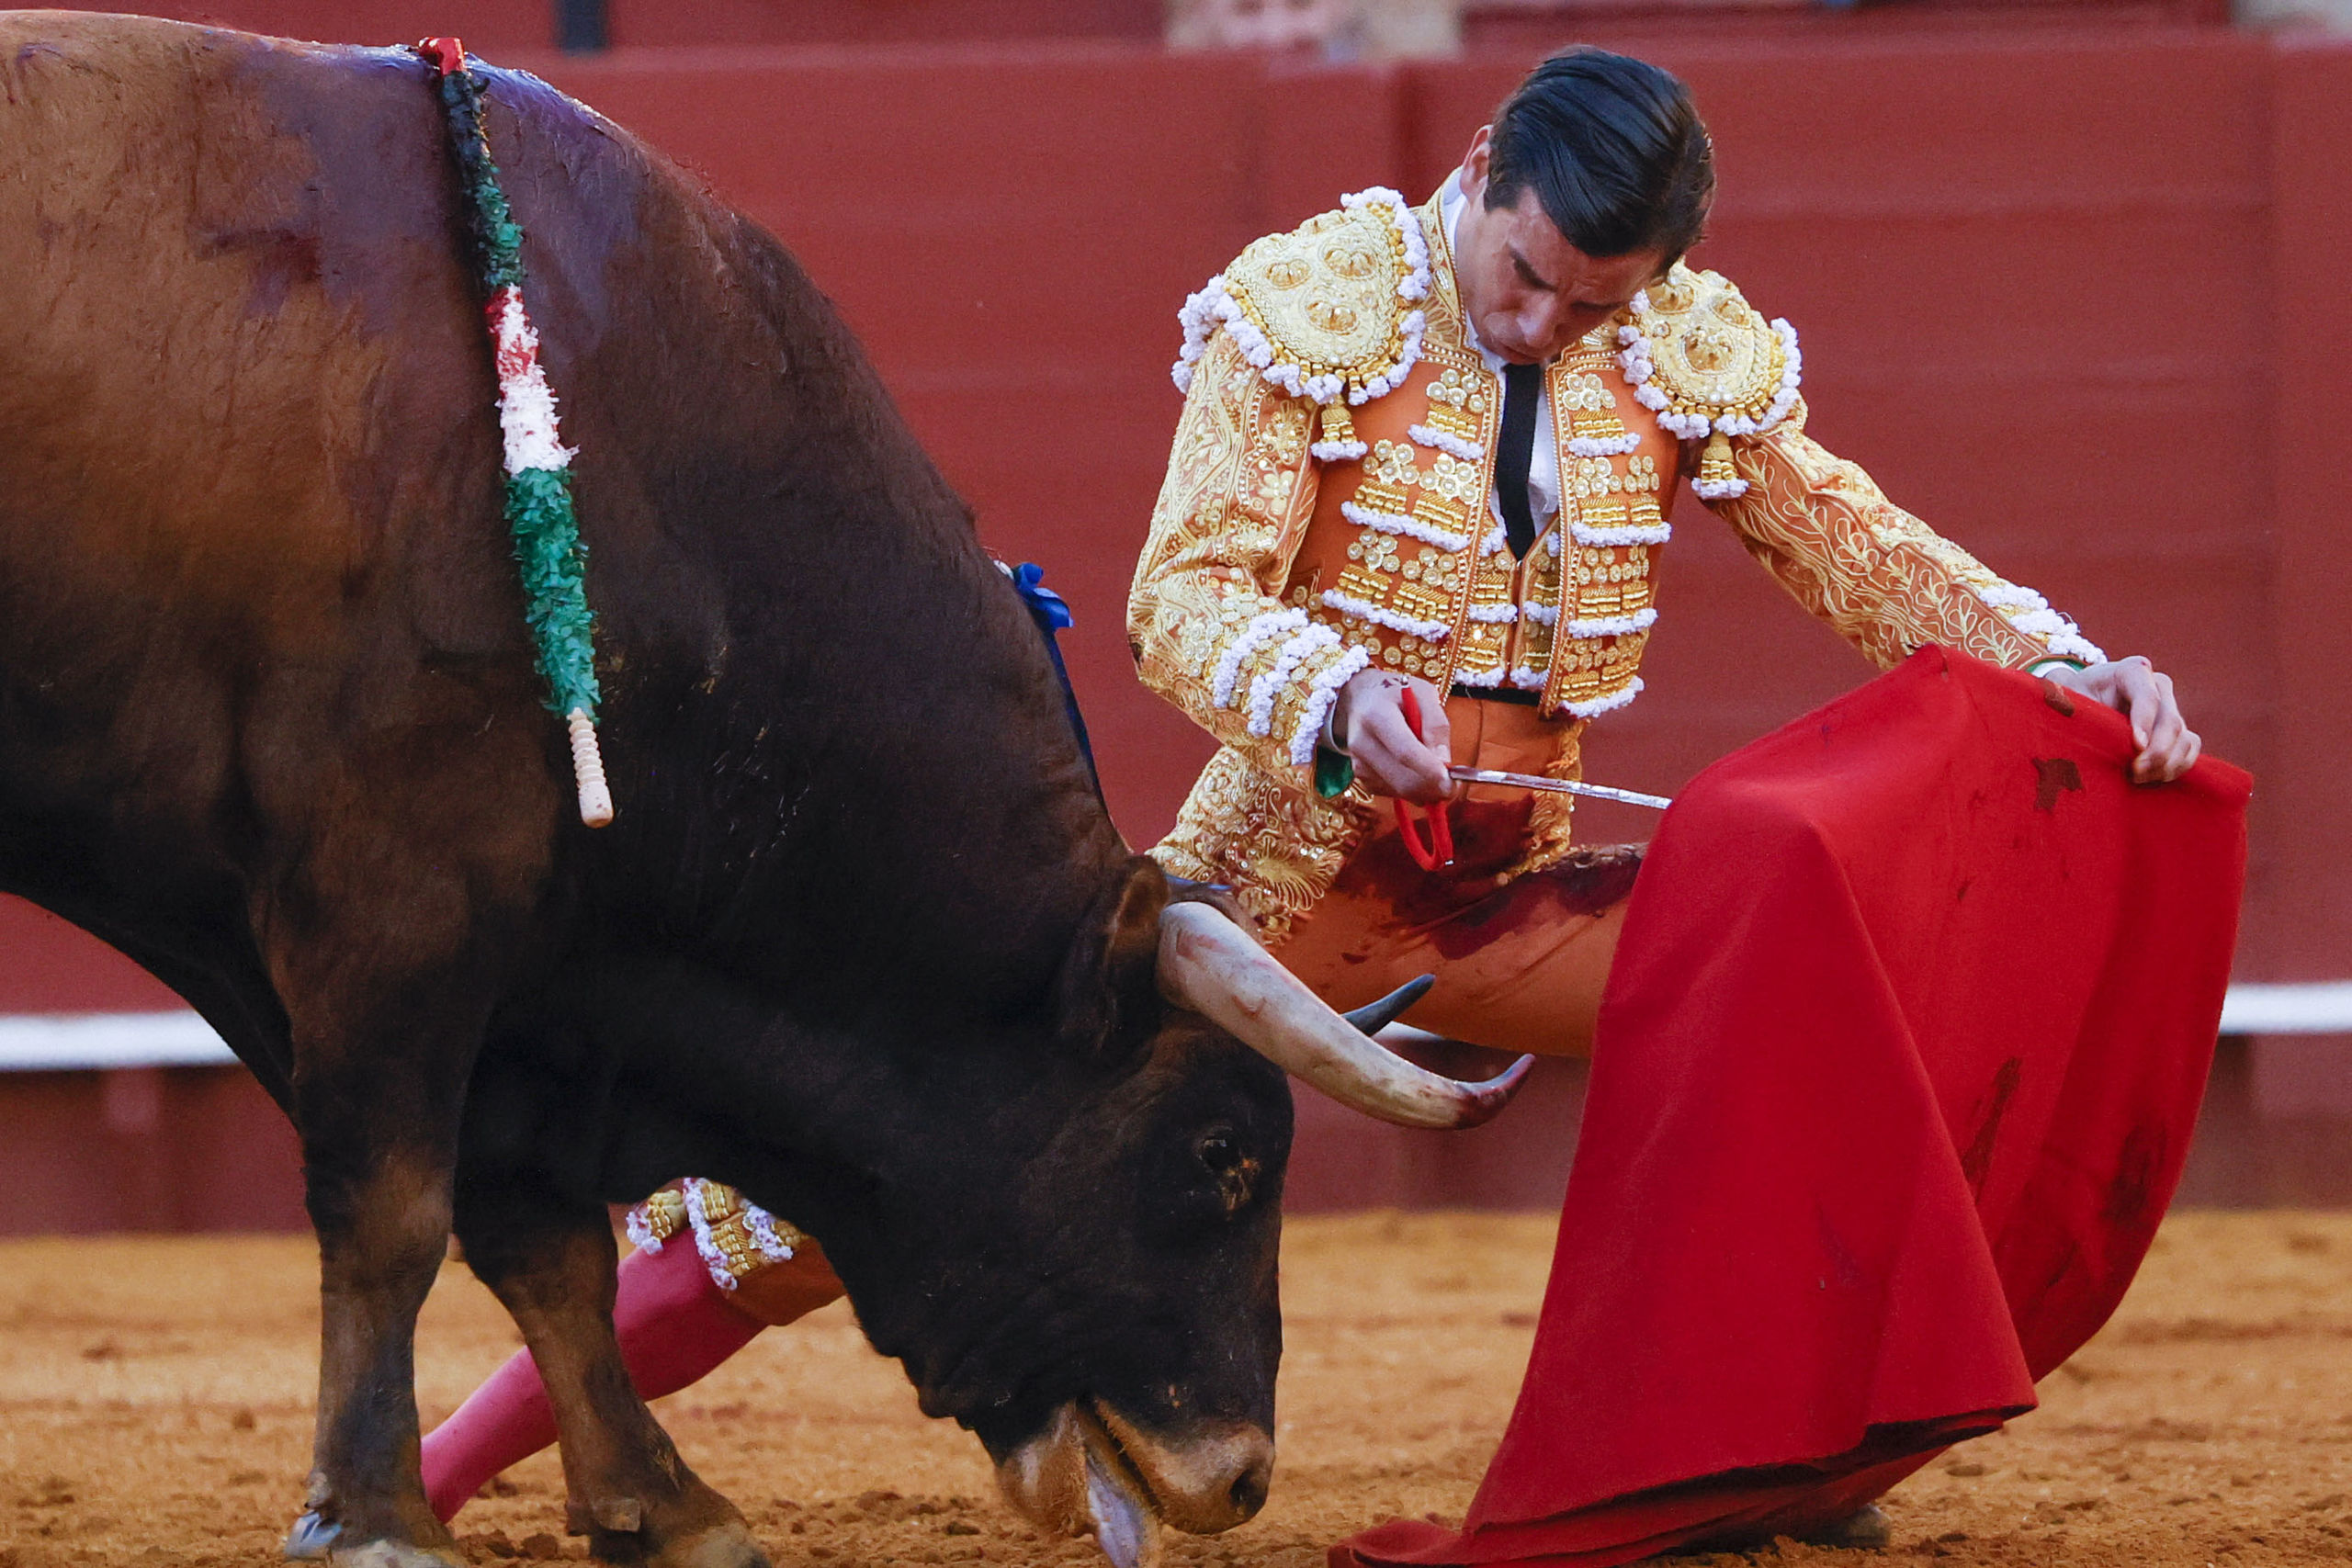 Al Alimón: Una Feria de Sevilla "memorable" en la que ha nacido "un nuevo mito: Juan Ortega"